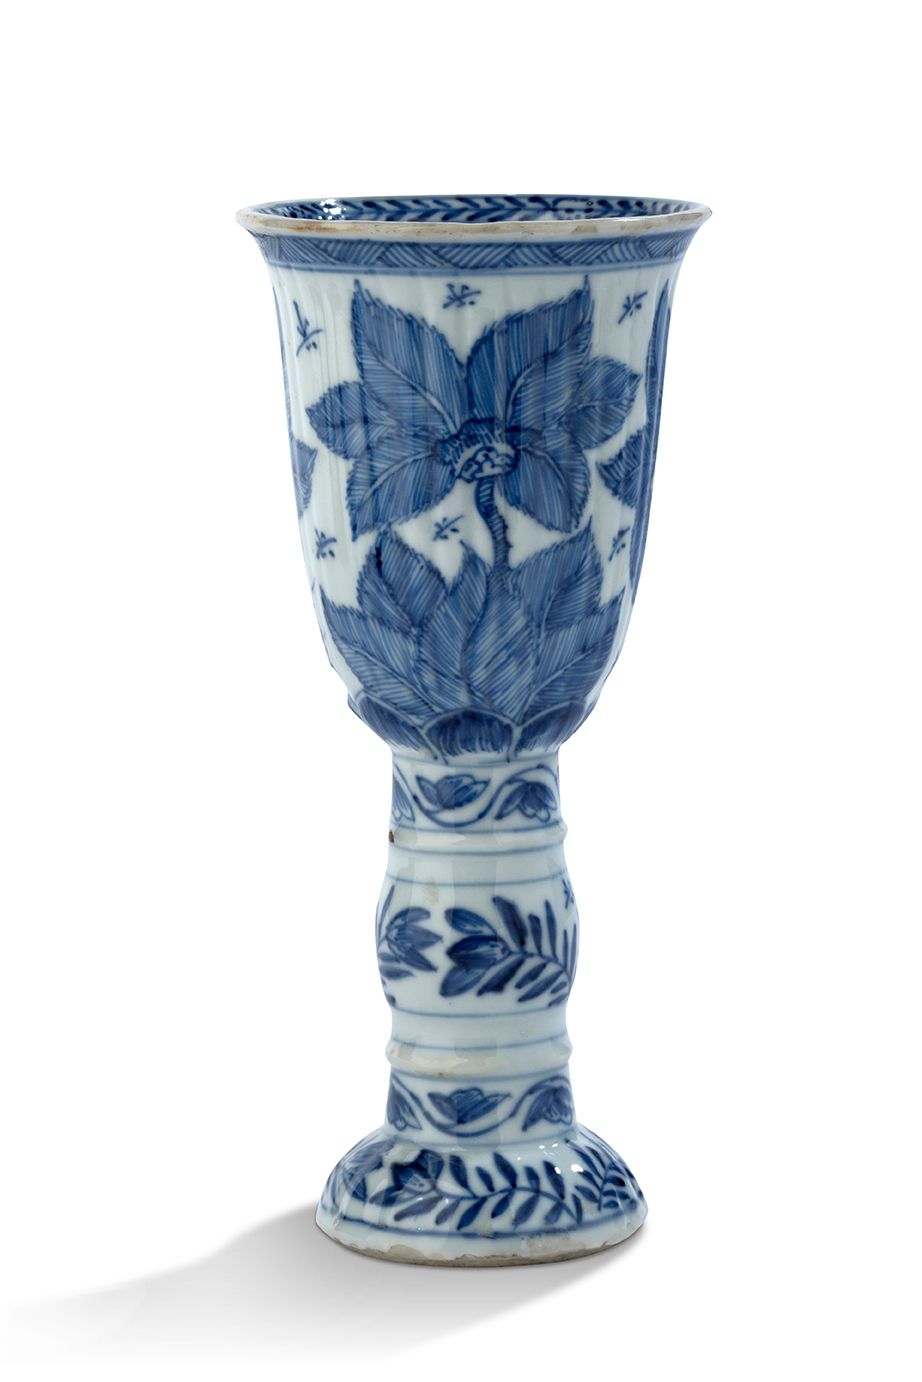 CHINE DYNASTIE QING, ÉPOQUE KANGXI (1661-1722) 中国清代，康熙时期（1661-1722年），青花瓷制高脚杯